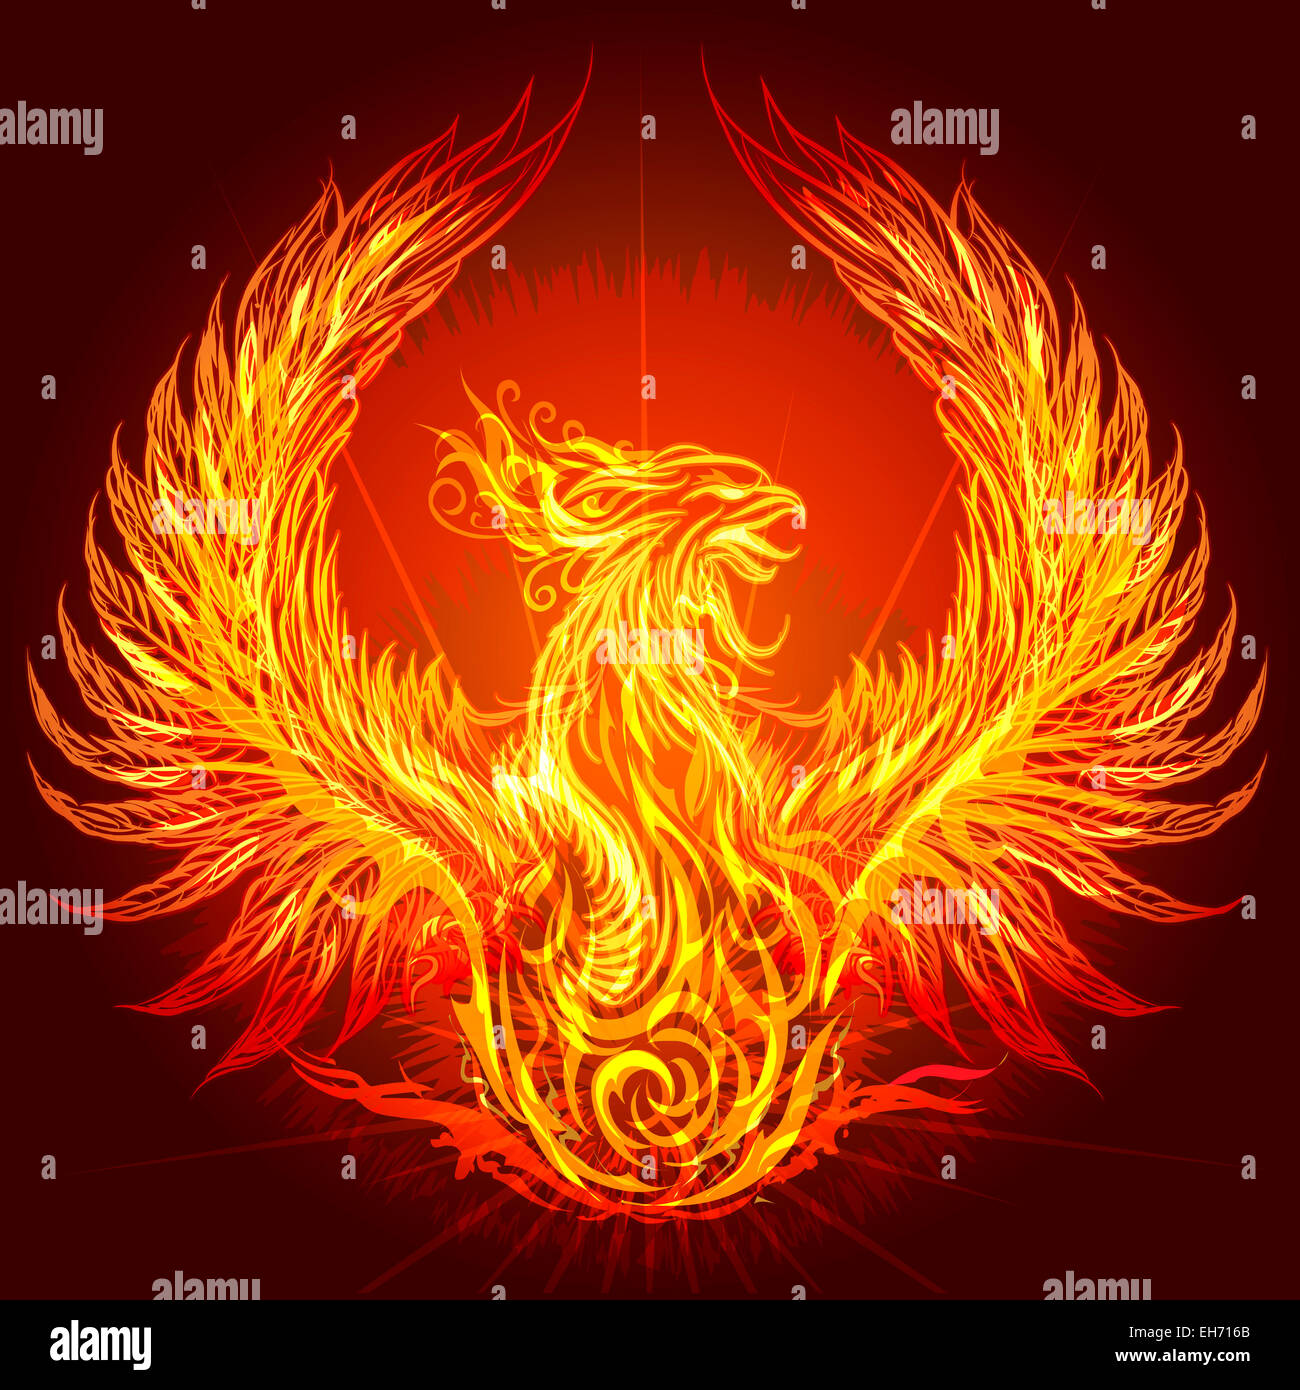 Ilustración con la quema de Phoenix dibujado en estilo heráldico Foto de stock